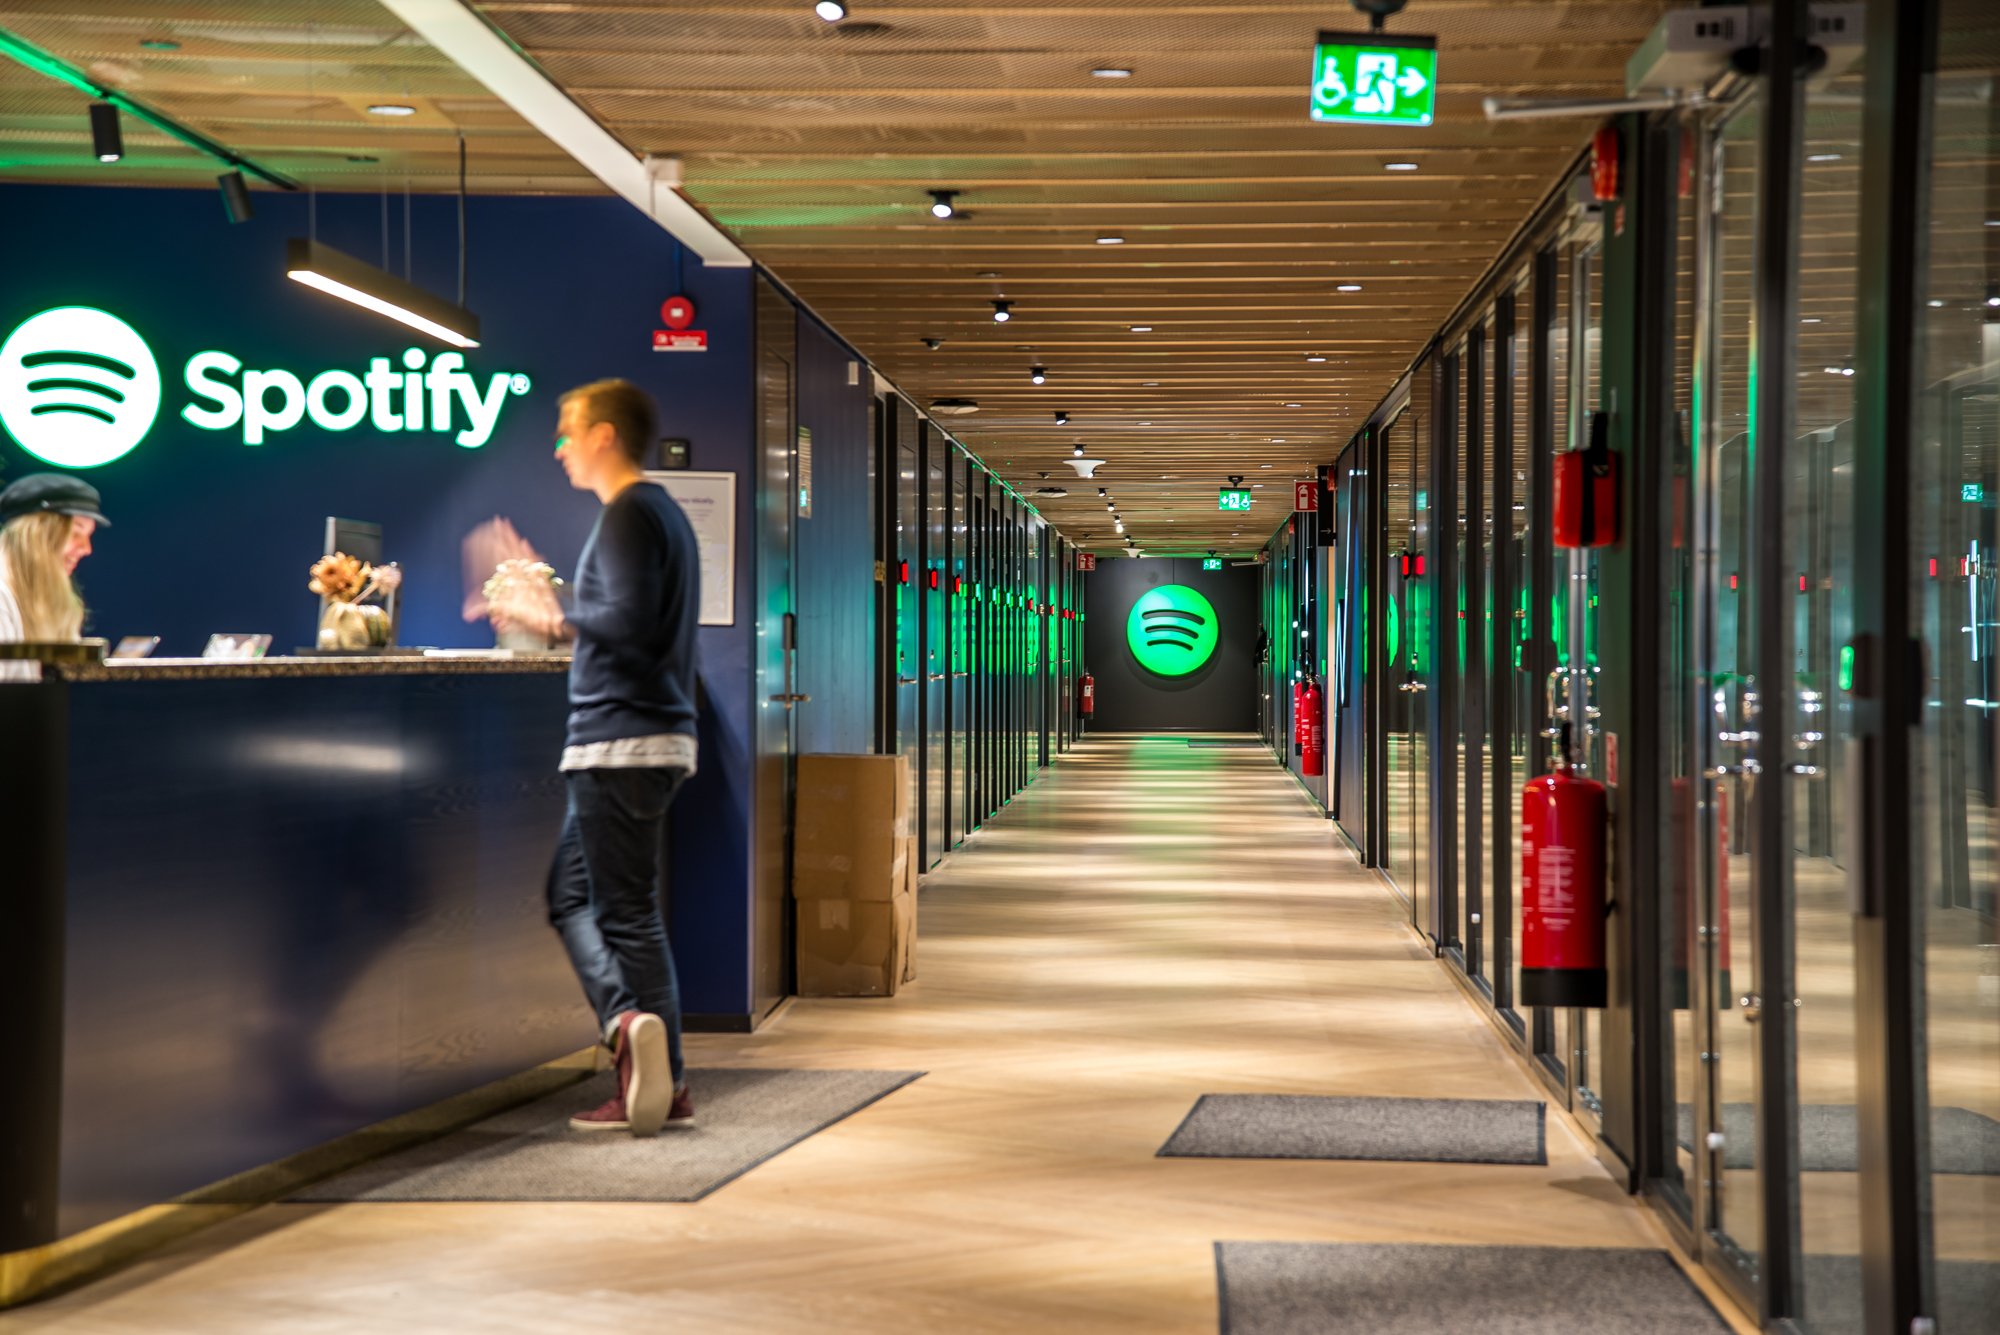 Spotify dispara les seves pèrdues fins als 430 milions d'euros